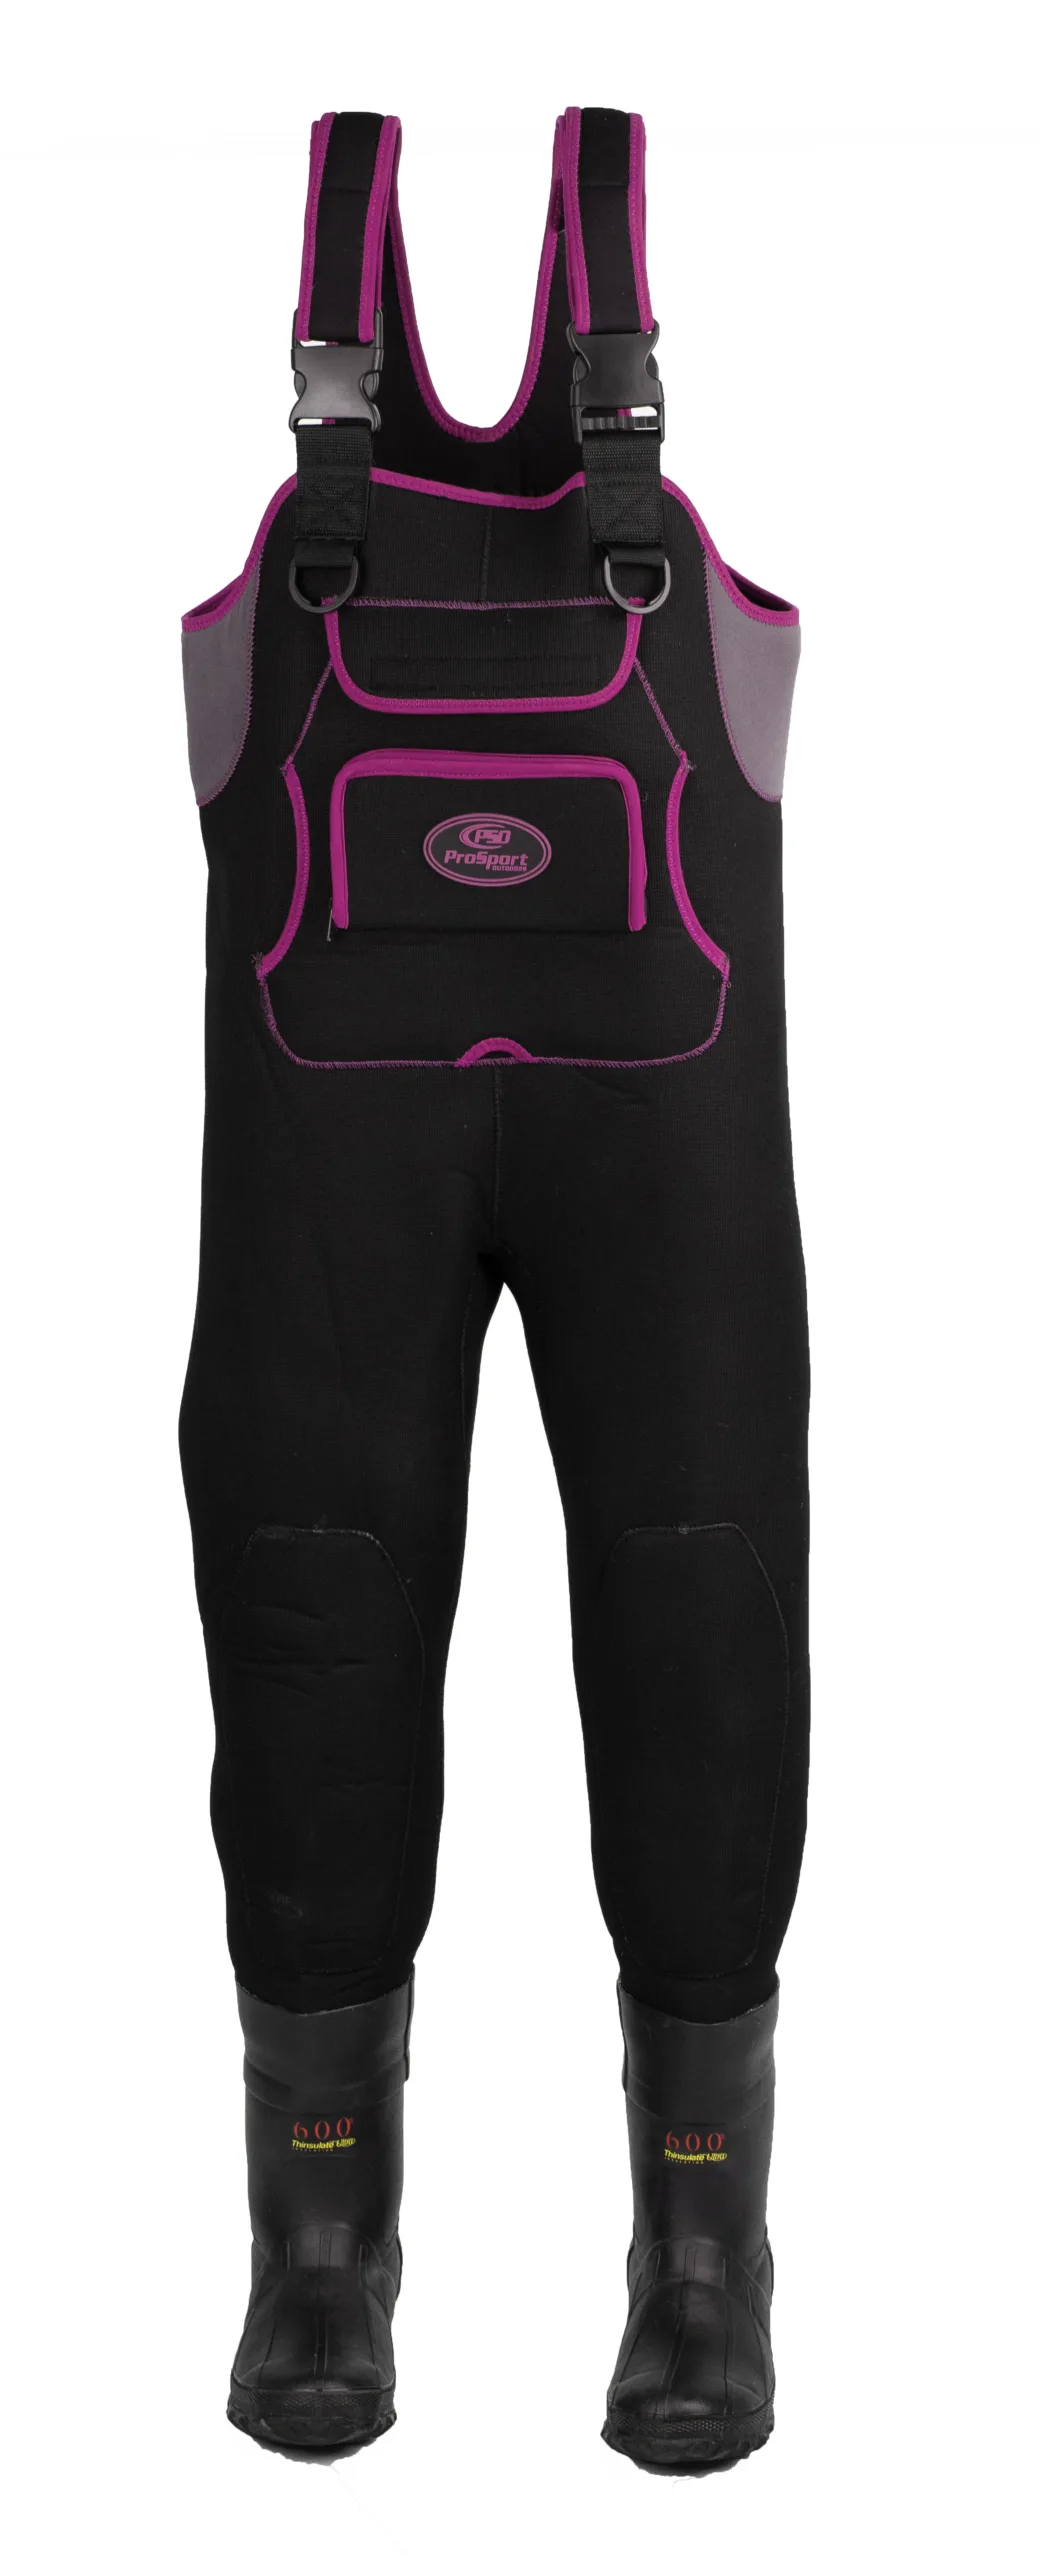 Women's Neoprene Waders - Black with Neon Pink Trim – ProSport Outdoors